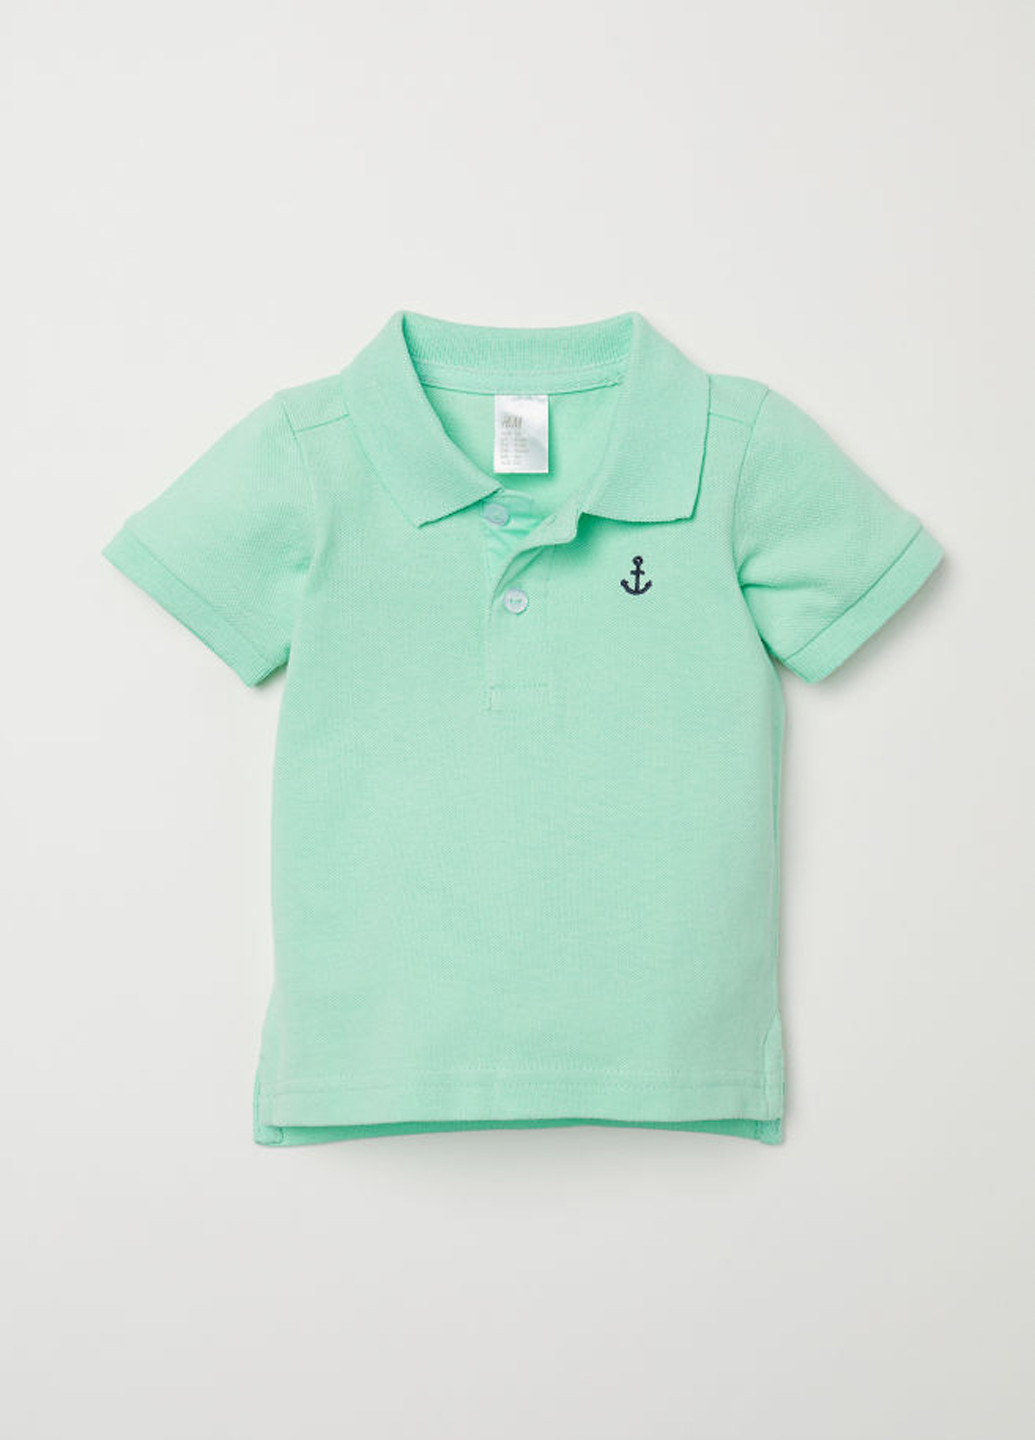 Мятная детская футболка-поло для мальчика H&M однотонная